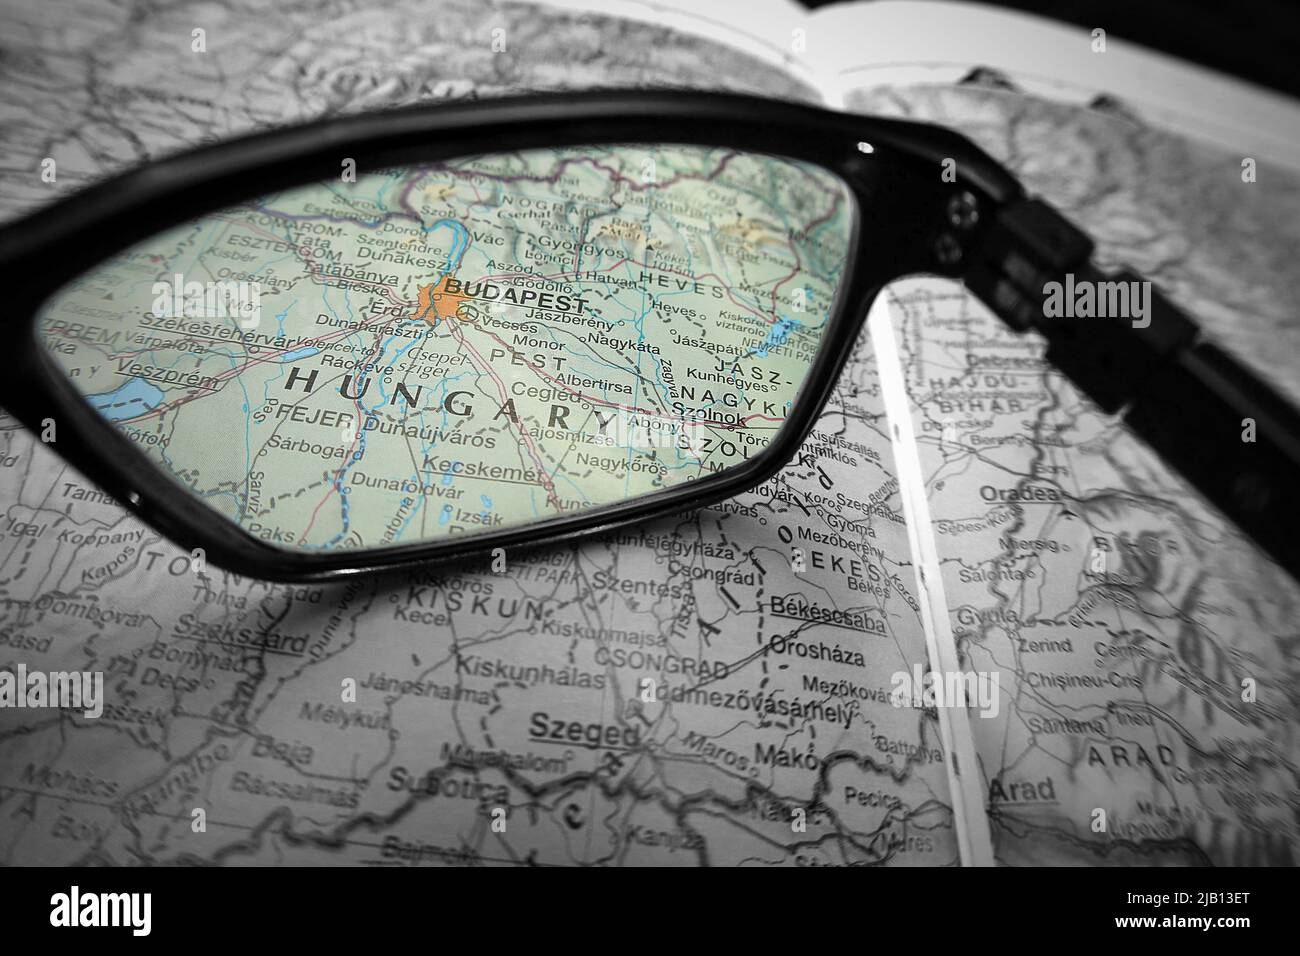 Une image créative montrant le pays de Hongrie et la ville de Budapest sur une carte à travers la lentille des lunettes de lecture. Noir et blanc avec mise au point des couleurs Banque D'Images